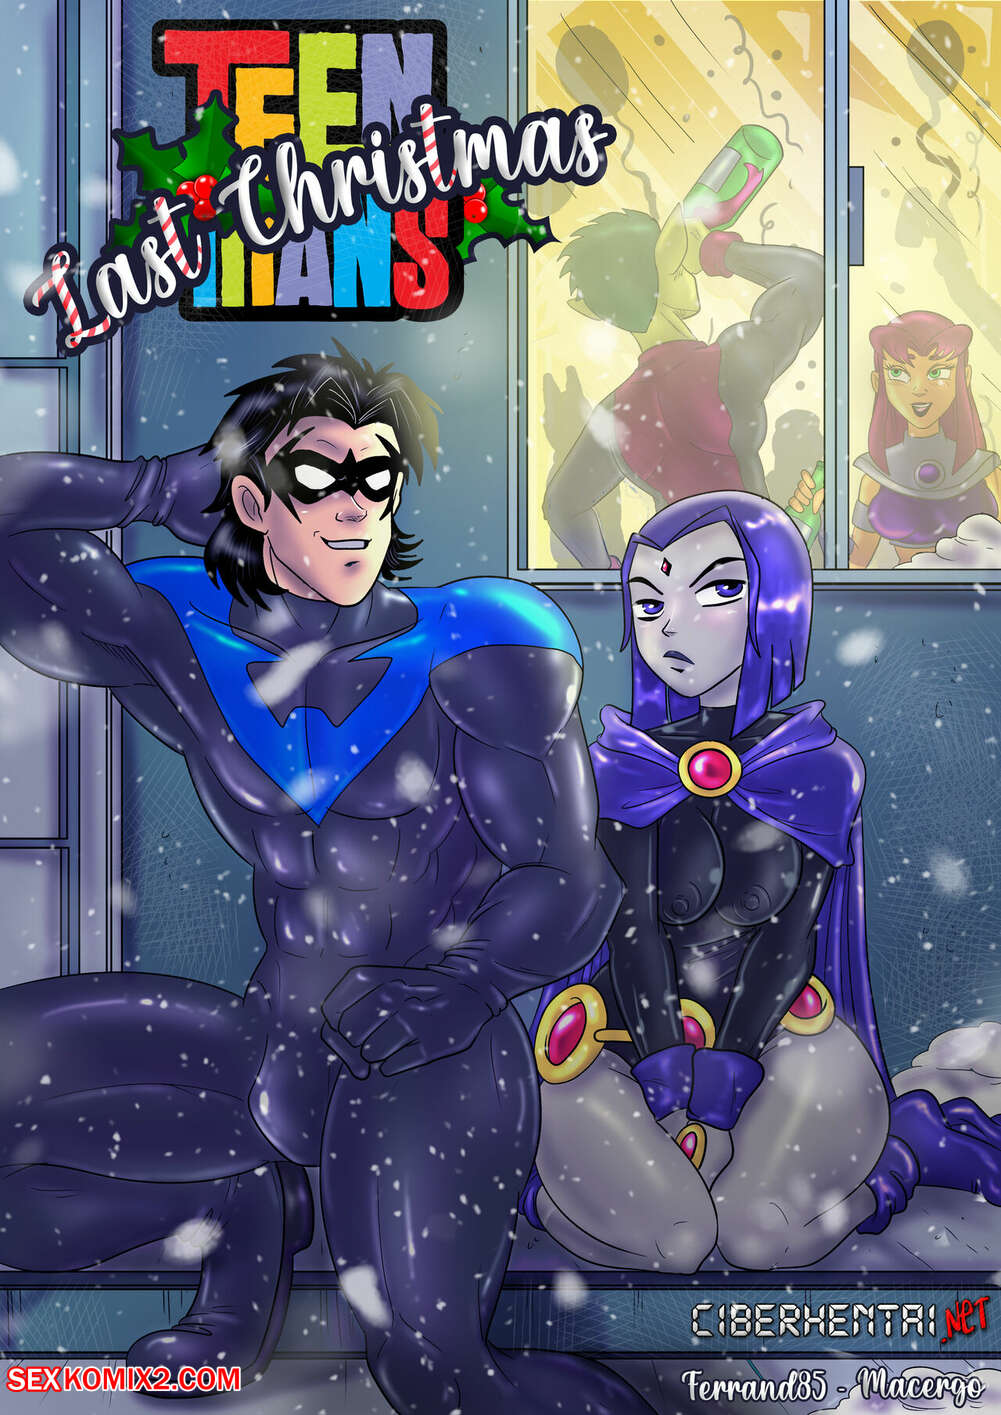 1001px x 1415px - âœ…ï¸ Porn comic Teen Titans. Last Christmas. Macergo. Sex comic and Raven  decided | Porn comics in English for adults only | sexkomix2.com